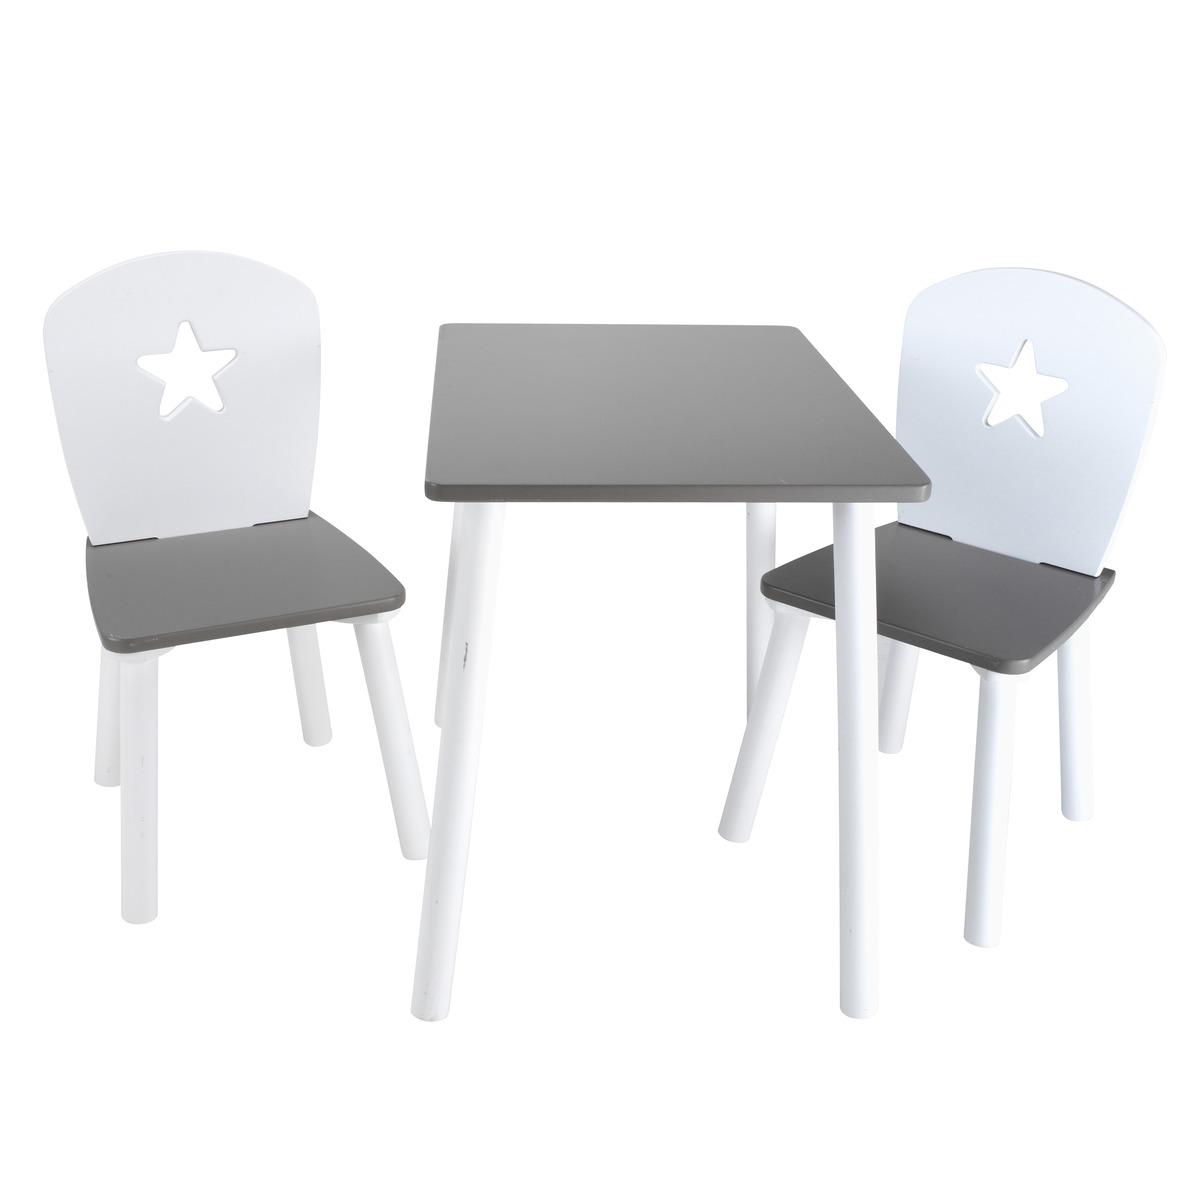 Ensemble table + 2 chaises enfant - 55 x 40 x H 50 cm - 30 x 29 x H 60 cm - Blanc, marron taupe